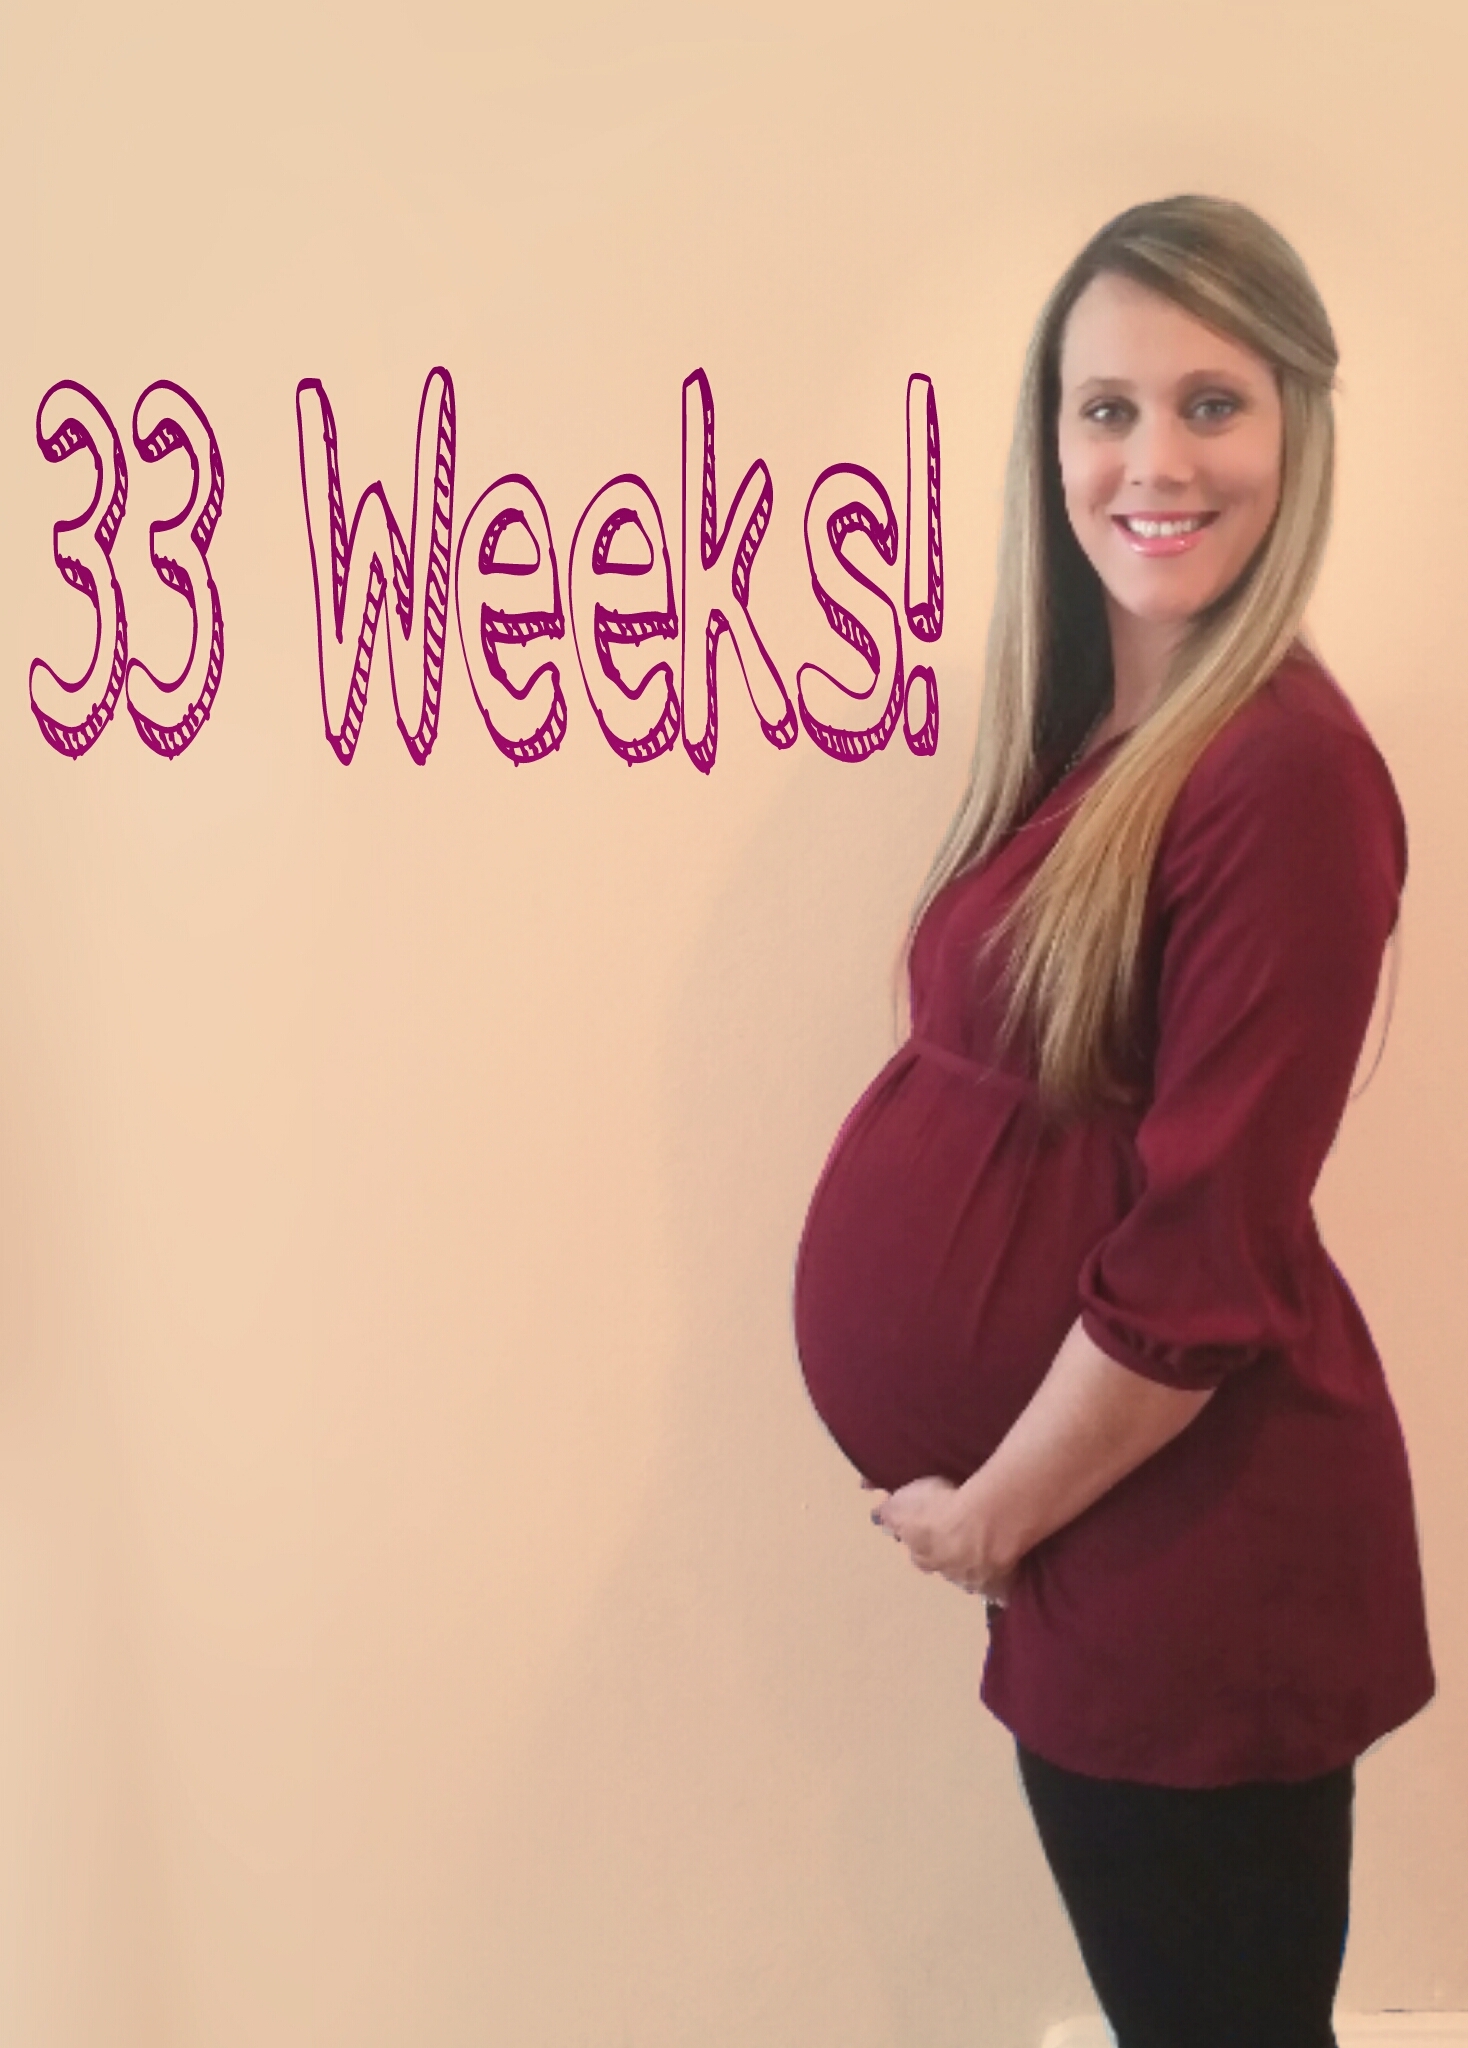 33 haftalik anne adayi